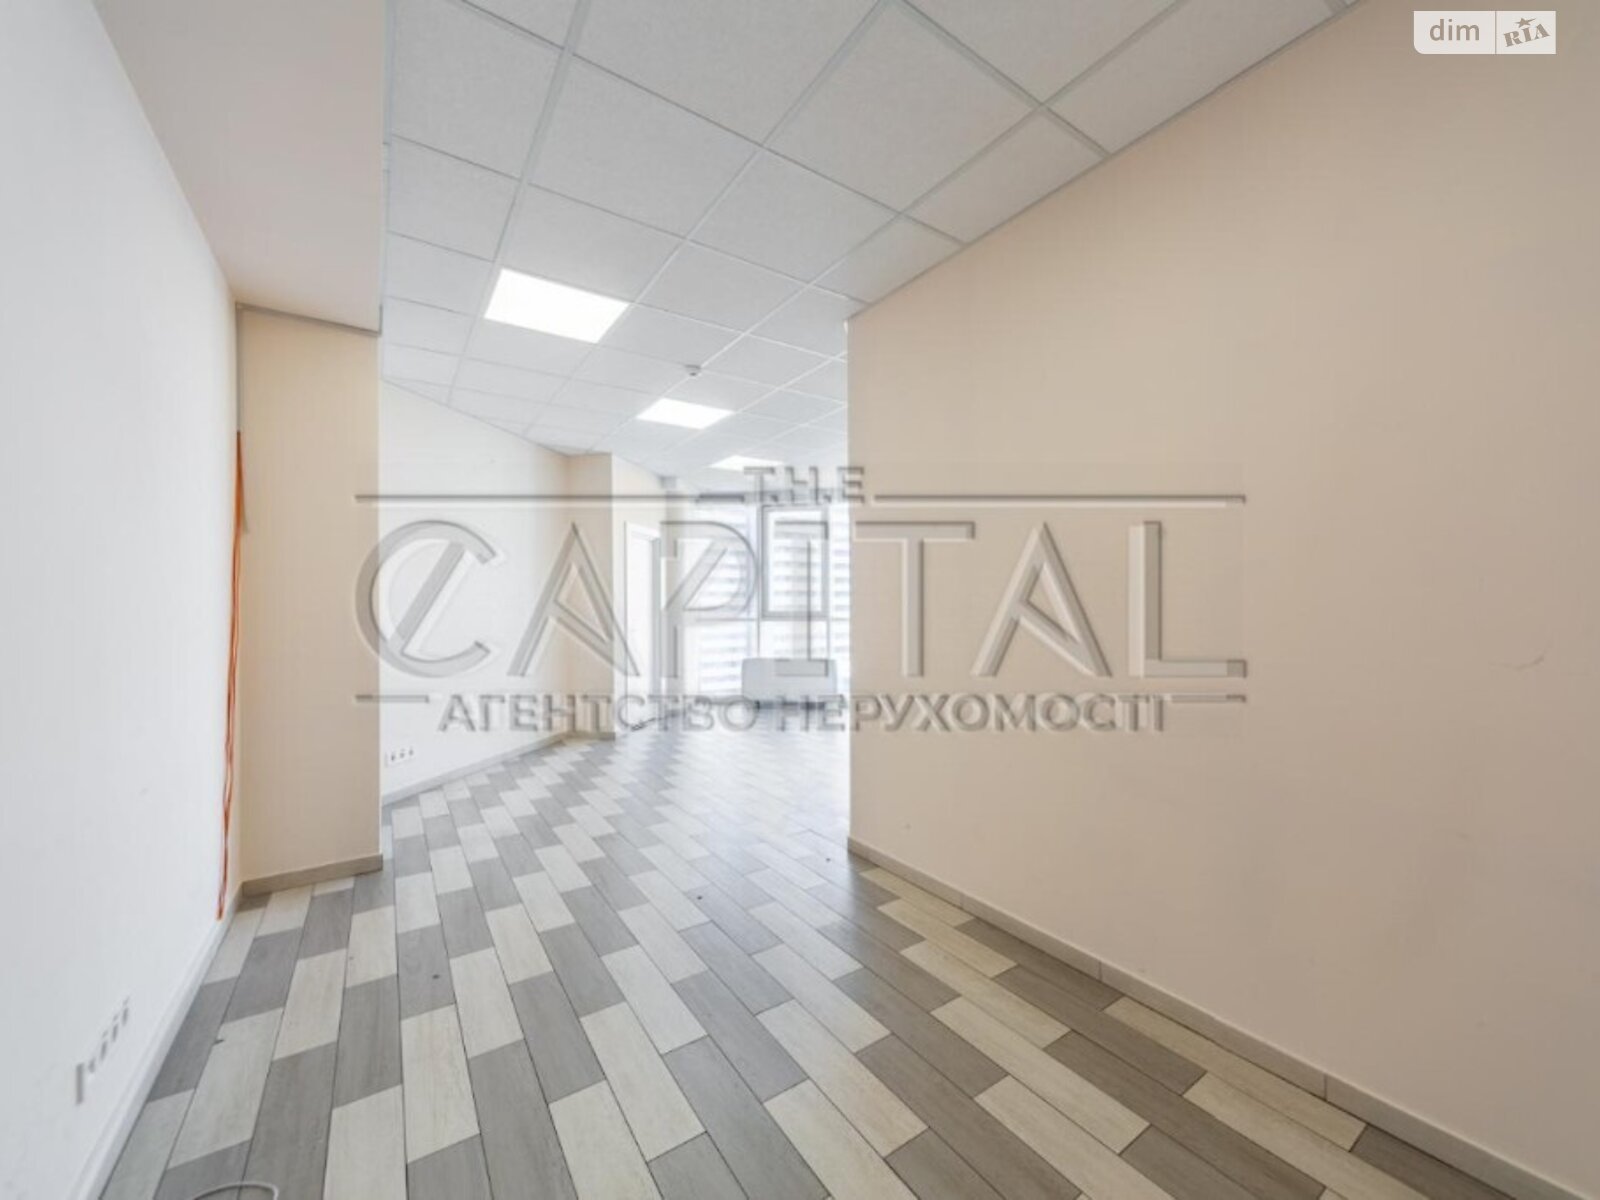 Аренда офисного помещения в Киеве, Голосеевский переулок 132, помещений - 2, этаж - 10 фото 1